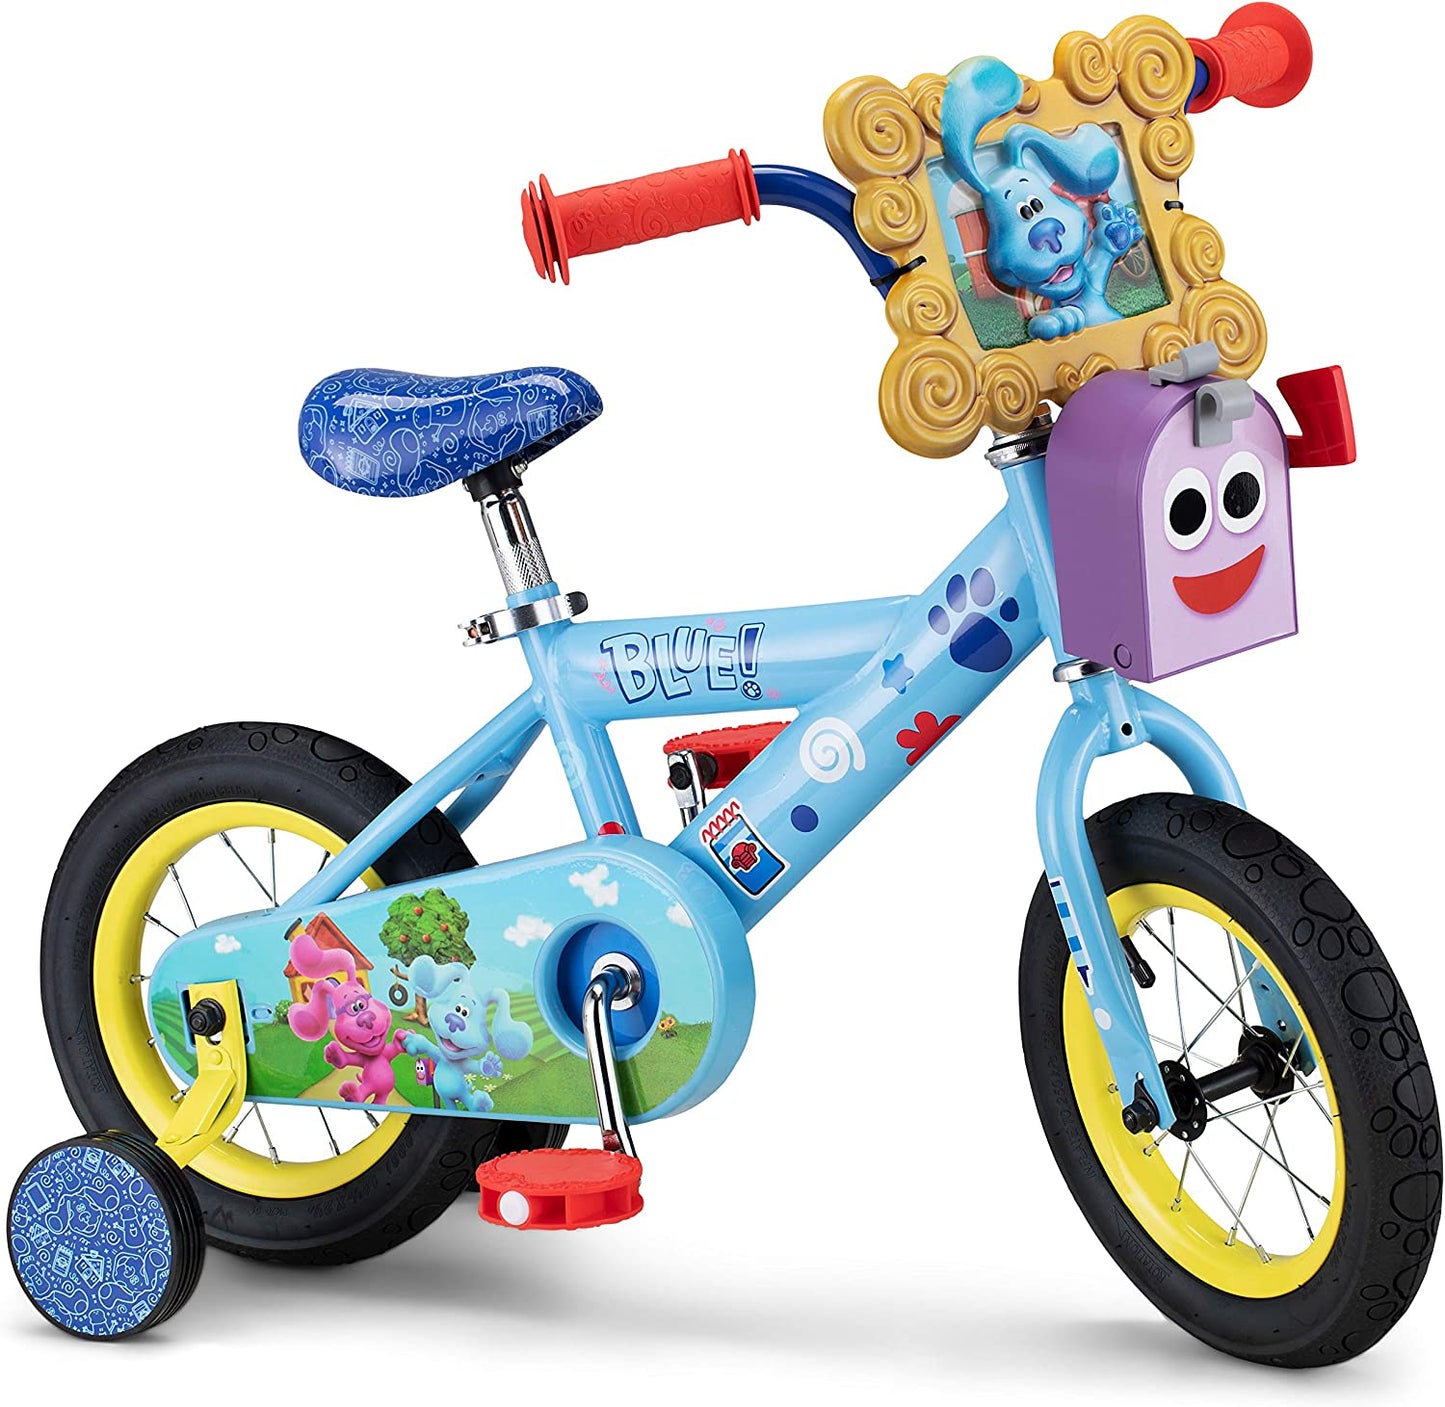 Nickelodeon Blues Clues Kids Bike Ages 2-4